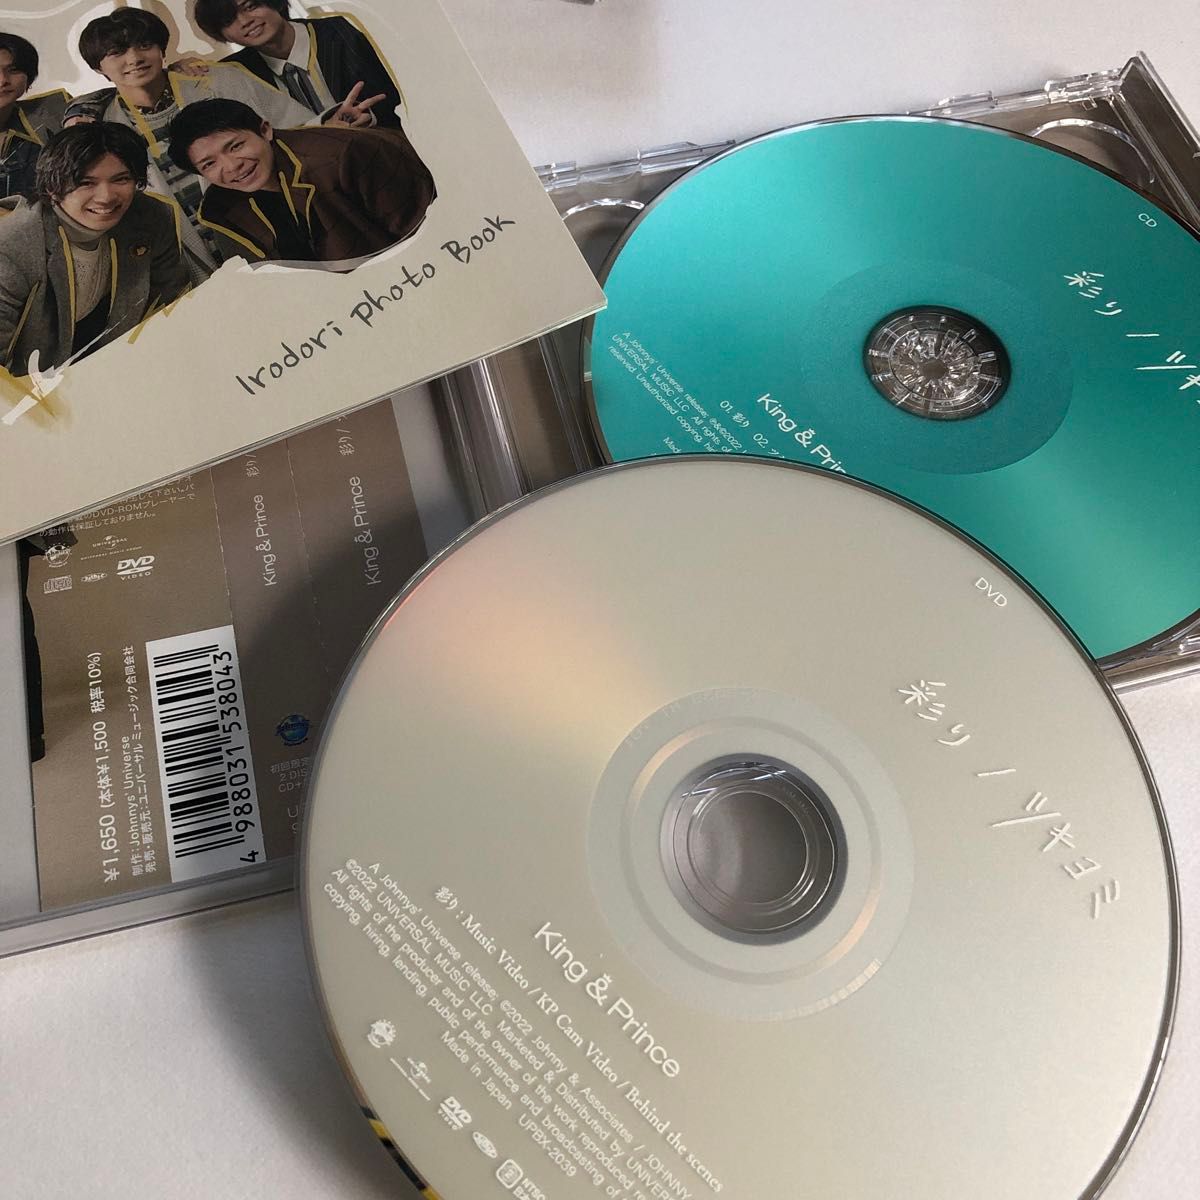 King & Prince 　ツキヨミ/彩り (初回限定盤A+初回限定盤B+通常盤+Dear Tiara盤) DVD付 CD